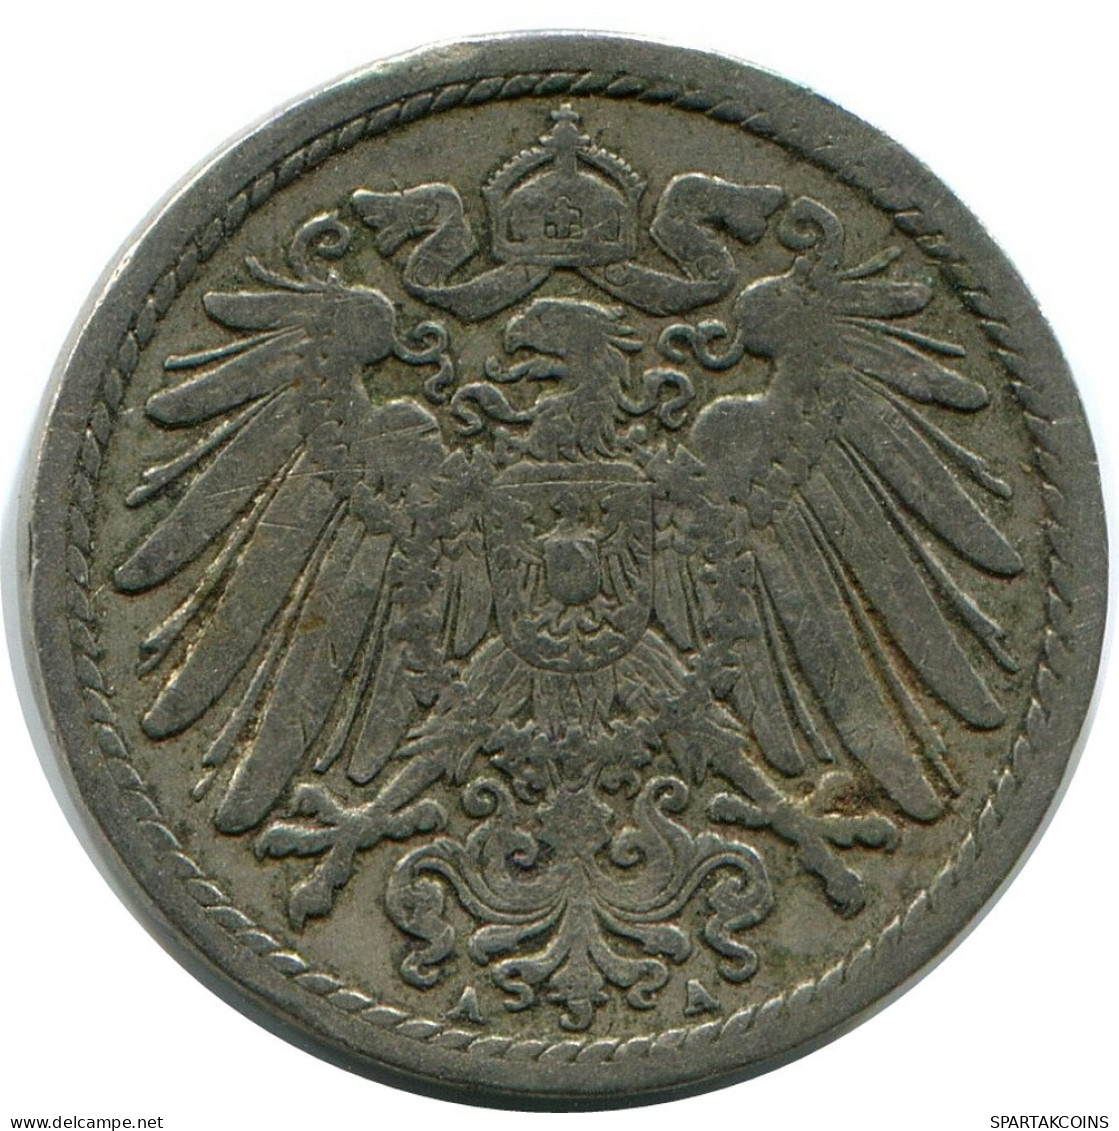 5 PFENNIG 1898 A GERMANY Coin #DB175.U.A - 5 Pfennig